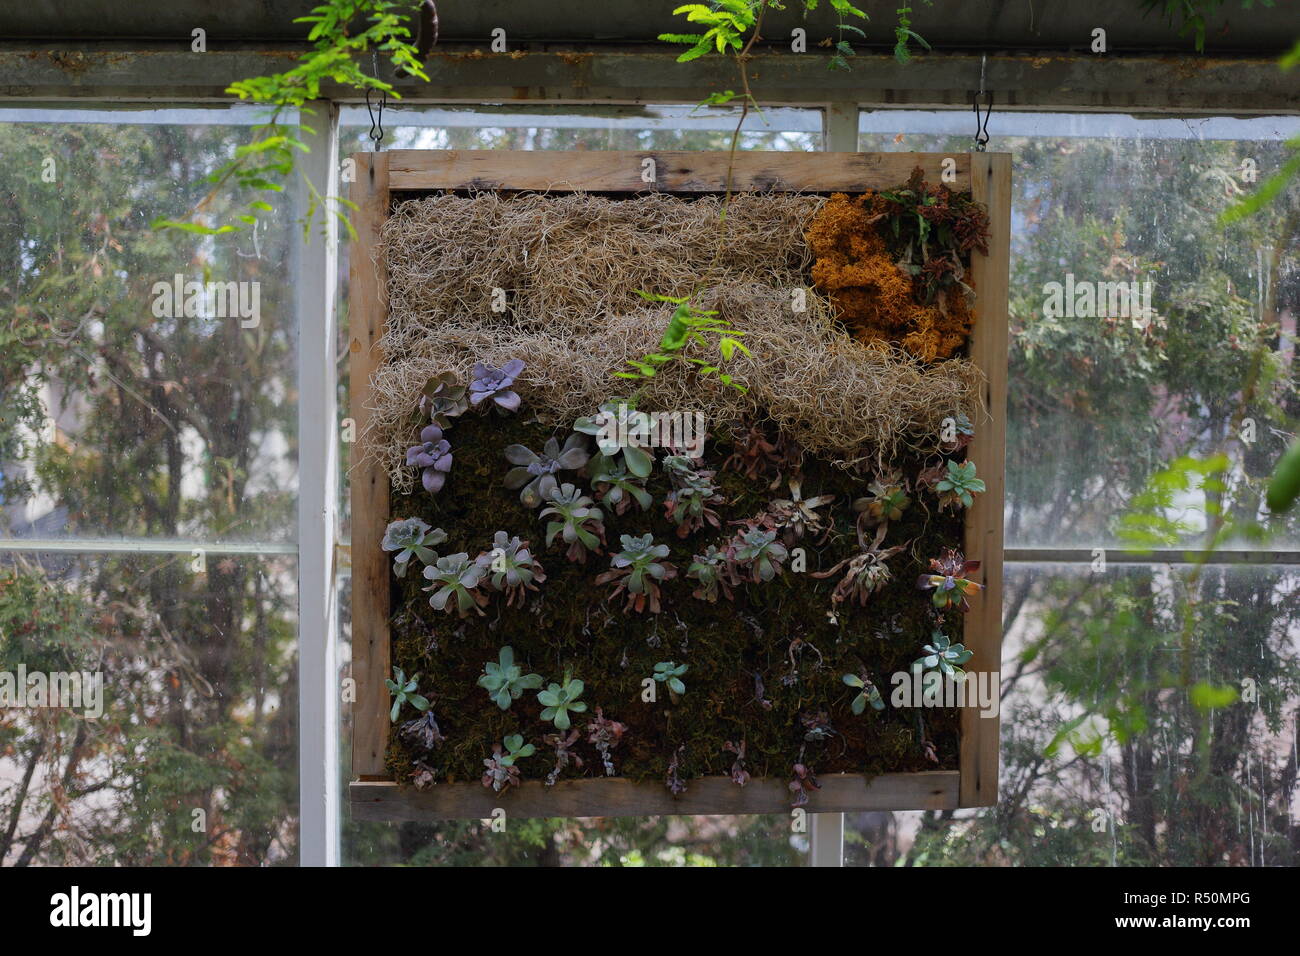 Framed Succulent Wall Garden Stock Photo